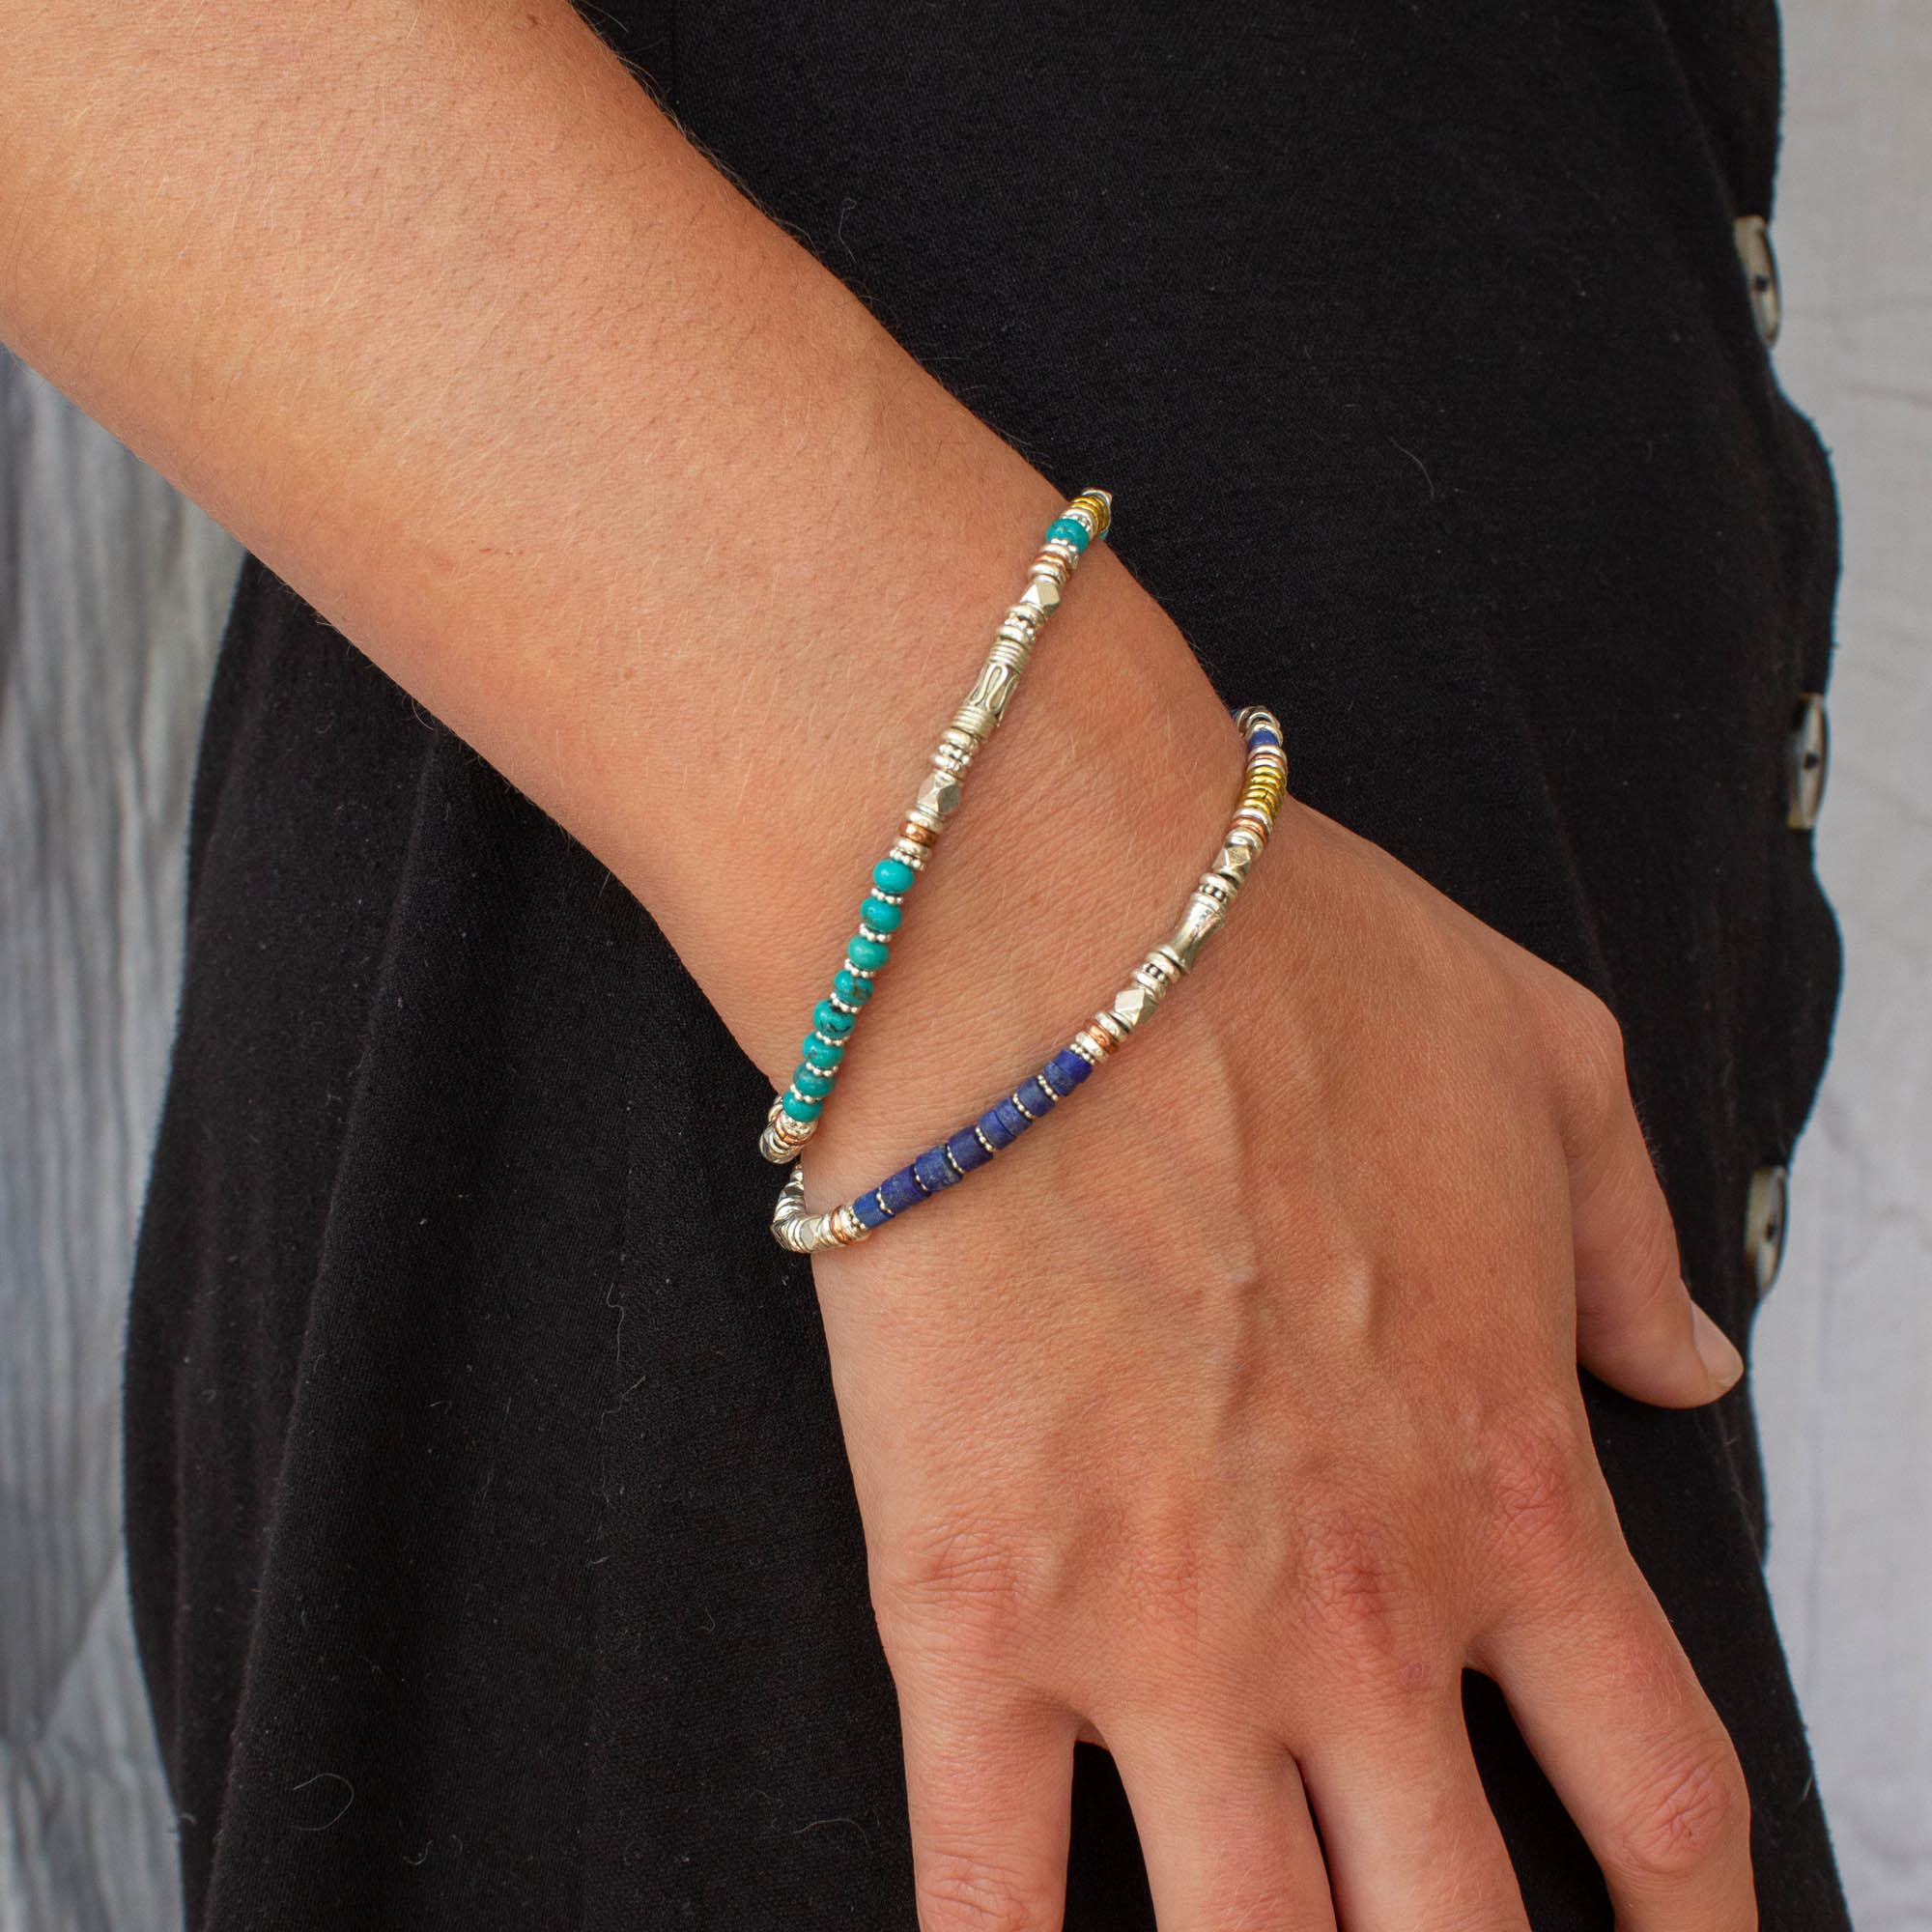 Lapis Lazuli and Mixed Metals Bracelet - Beyond Biasa